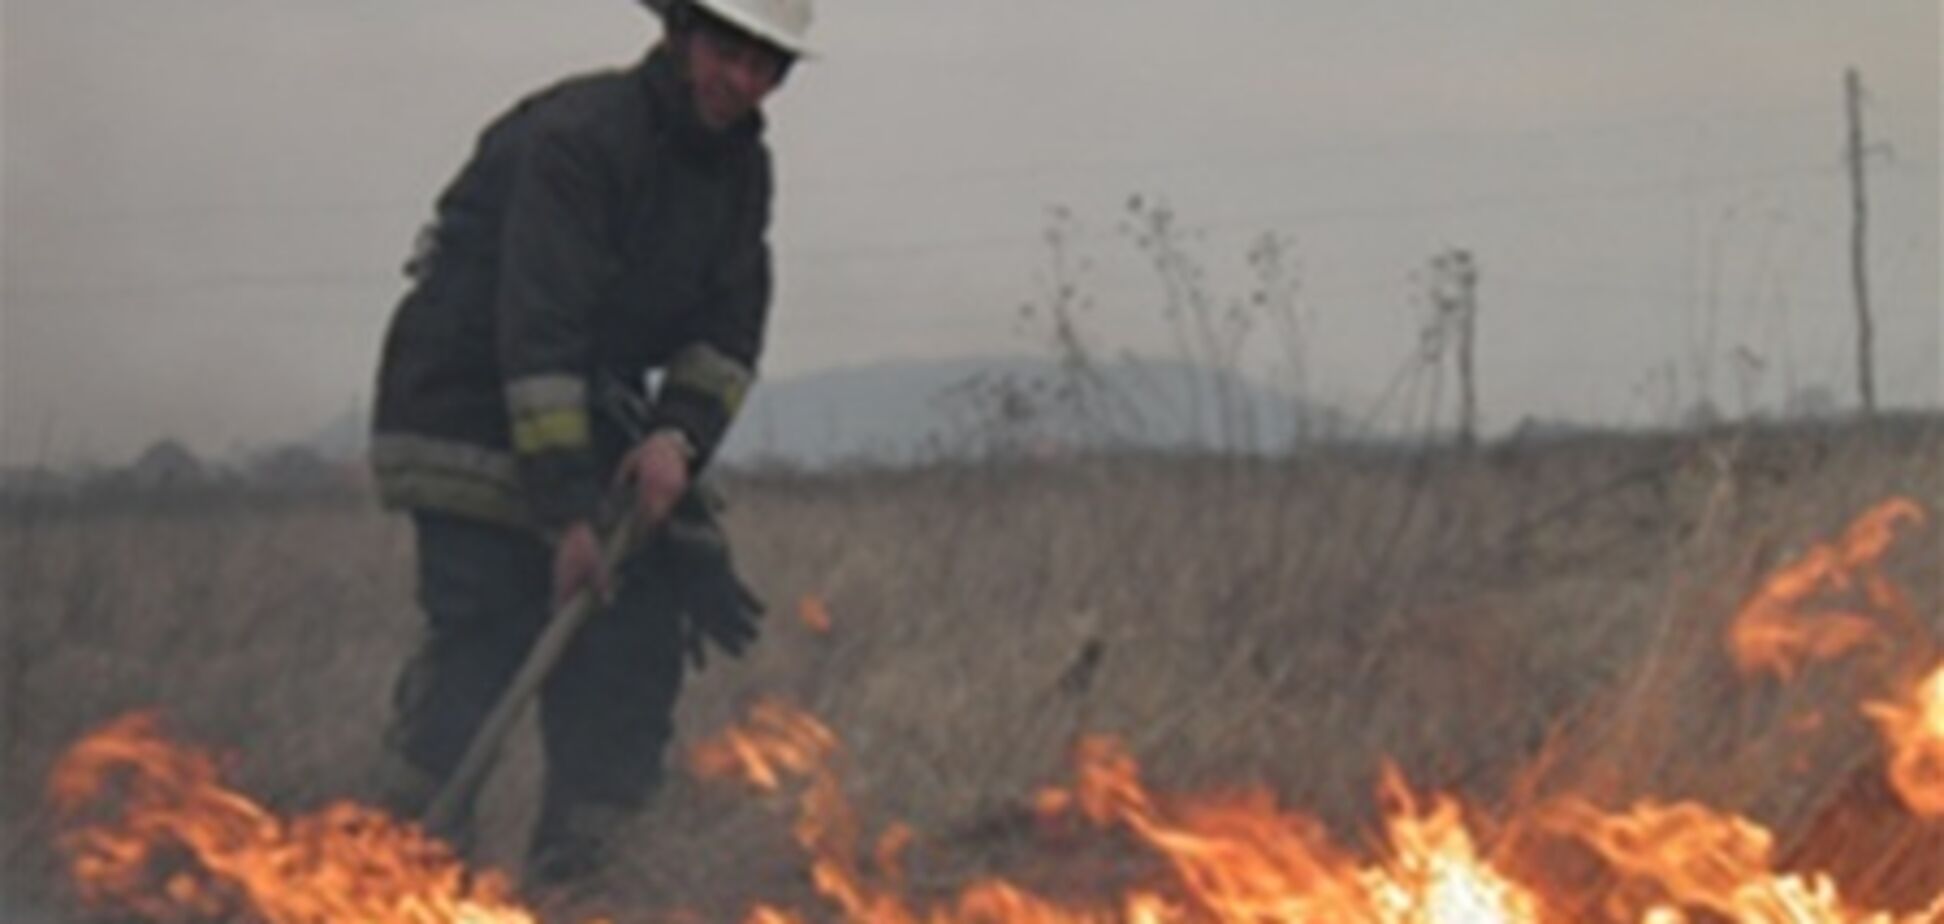 На Закарпатье выгорело 2 га лесного массива